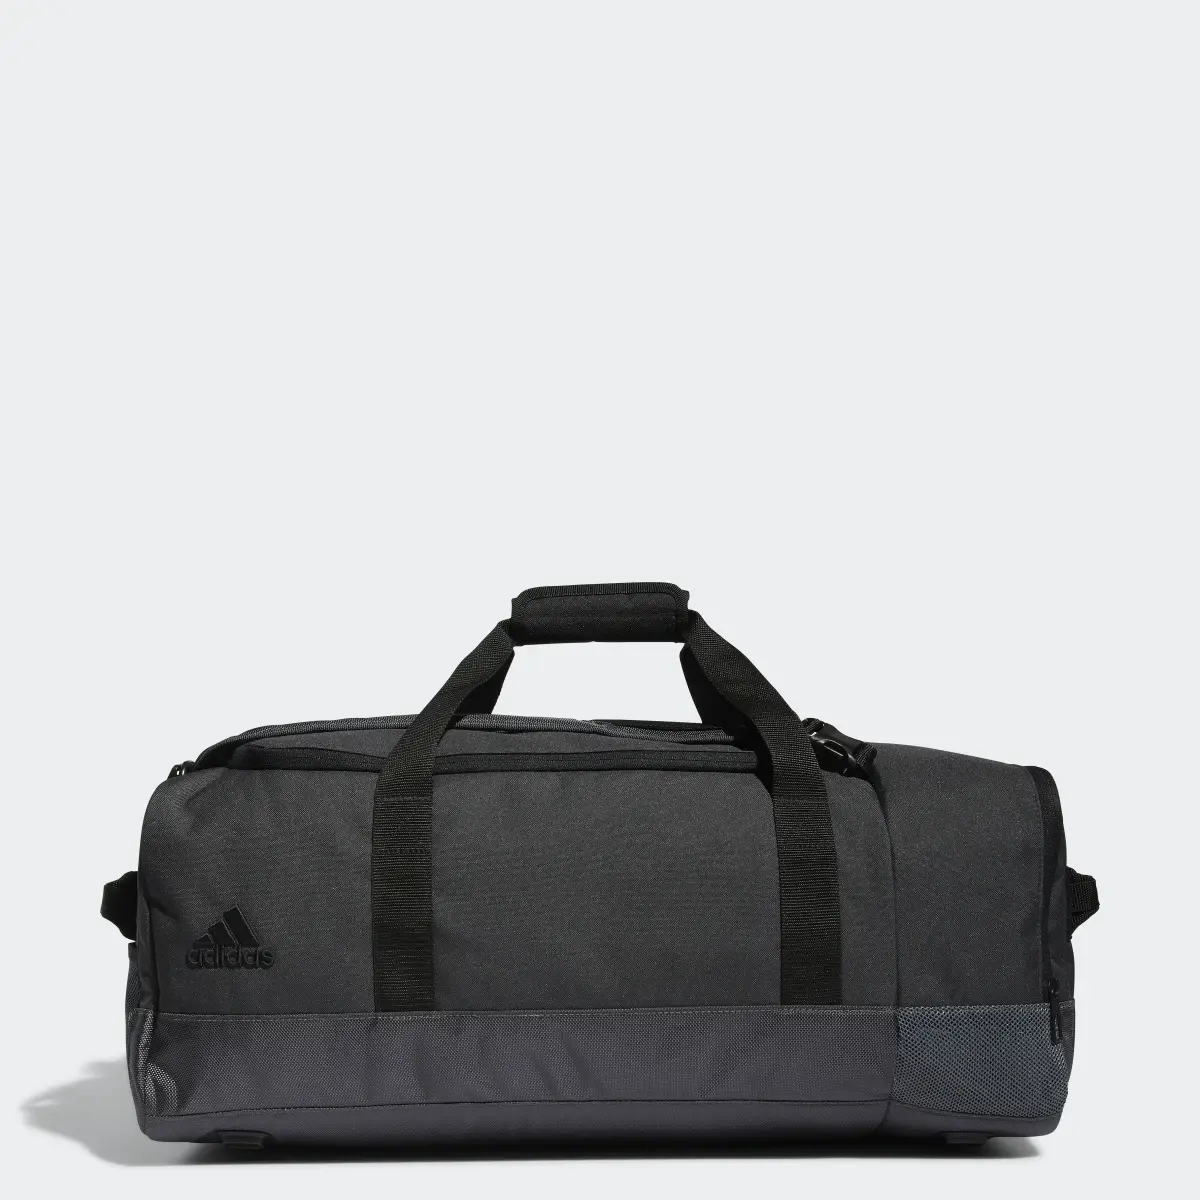 Adidas Golf Duffel Bag. 1